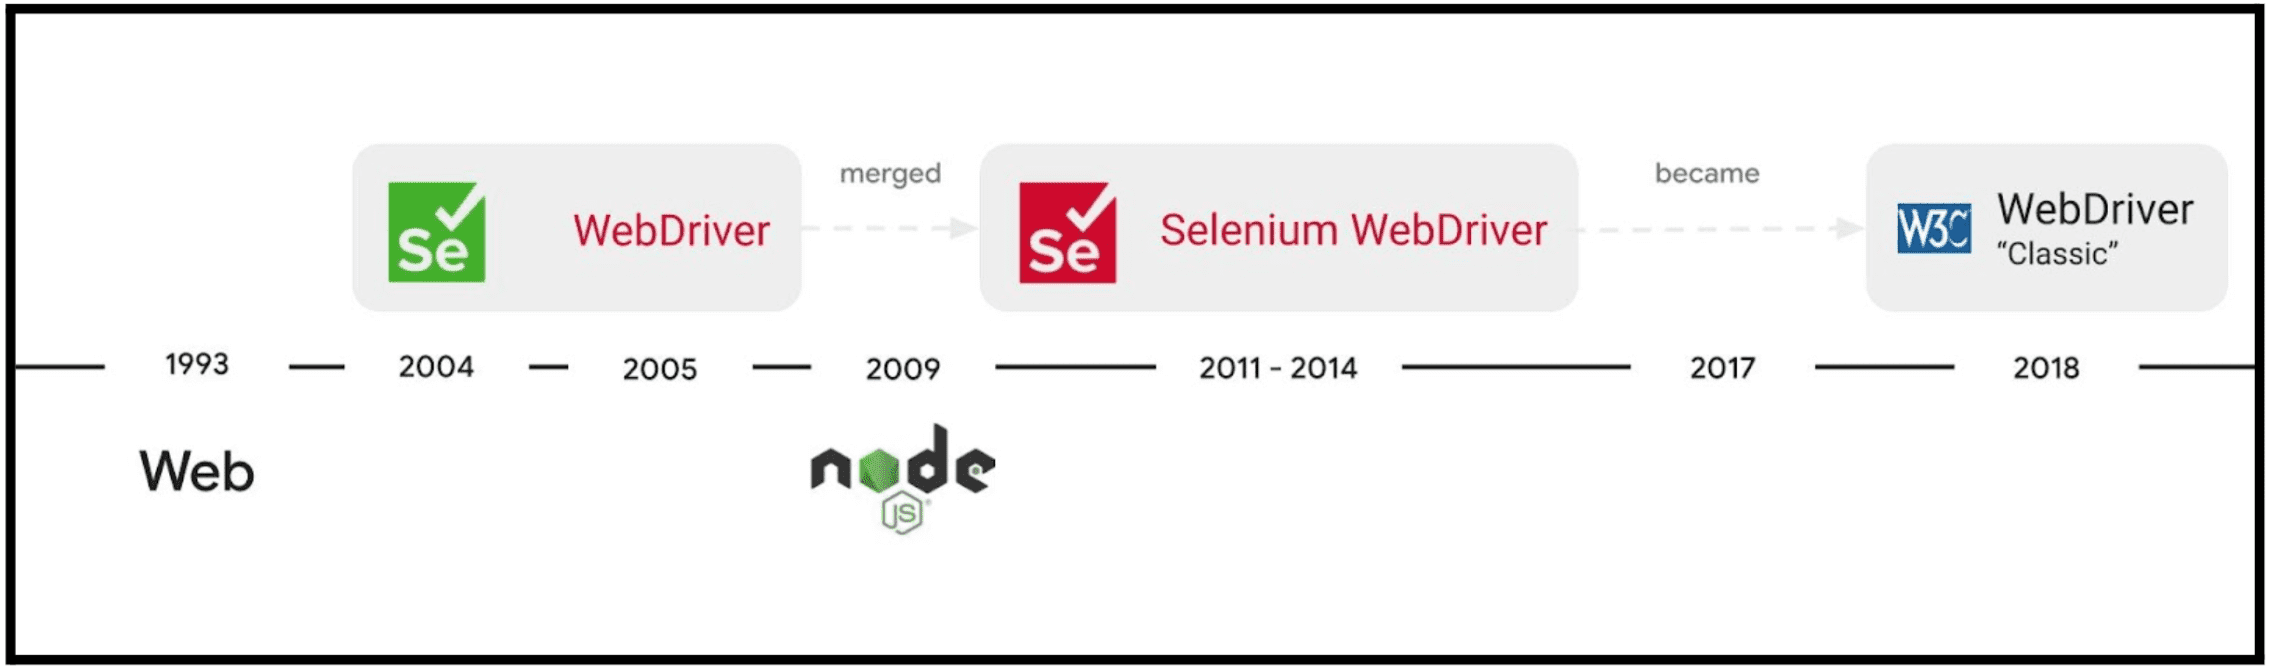 La evolución del proyecto Selenium WebDriver.